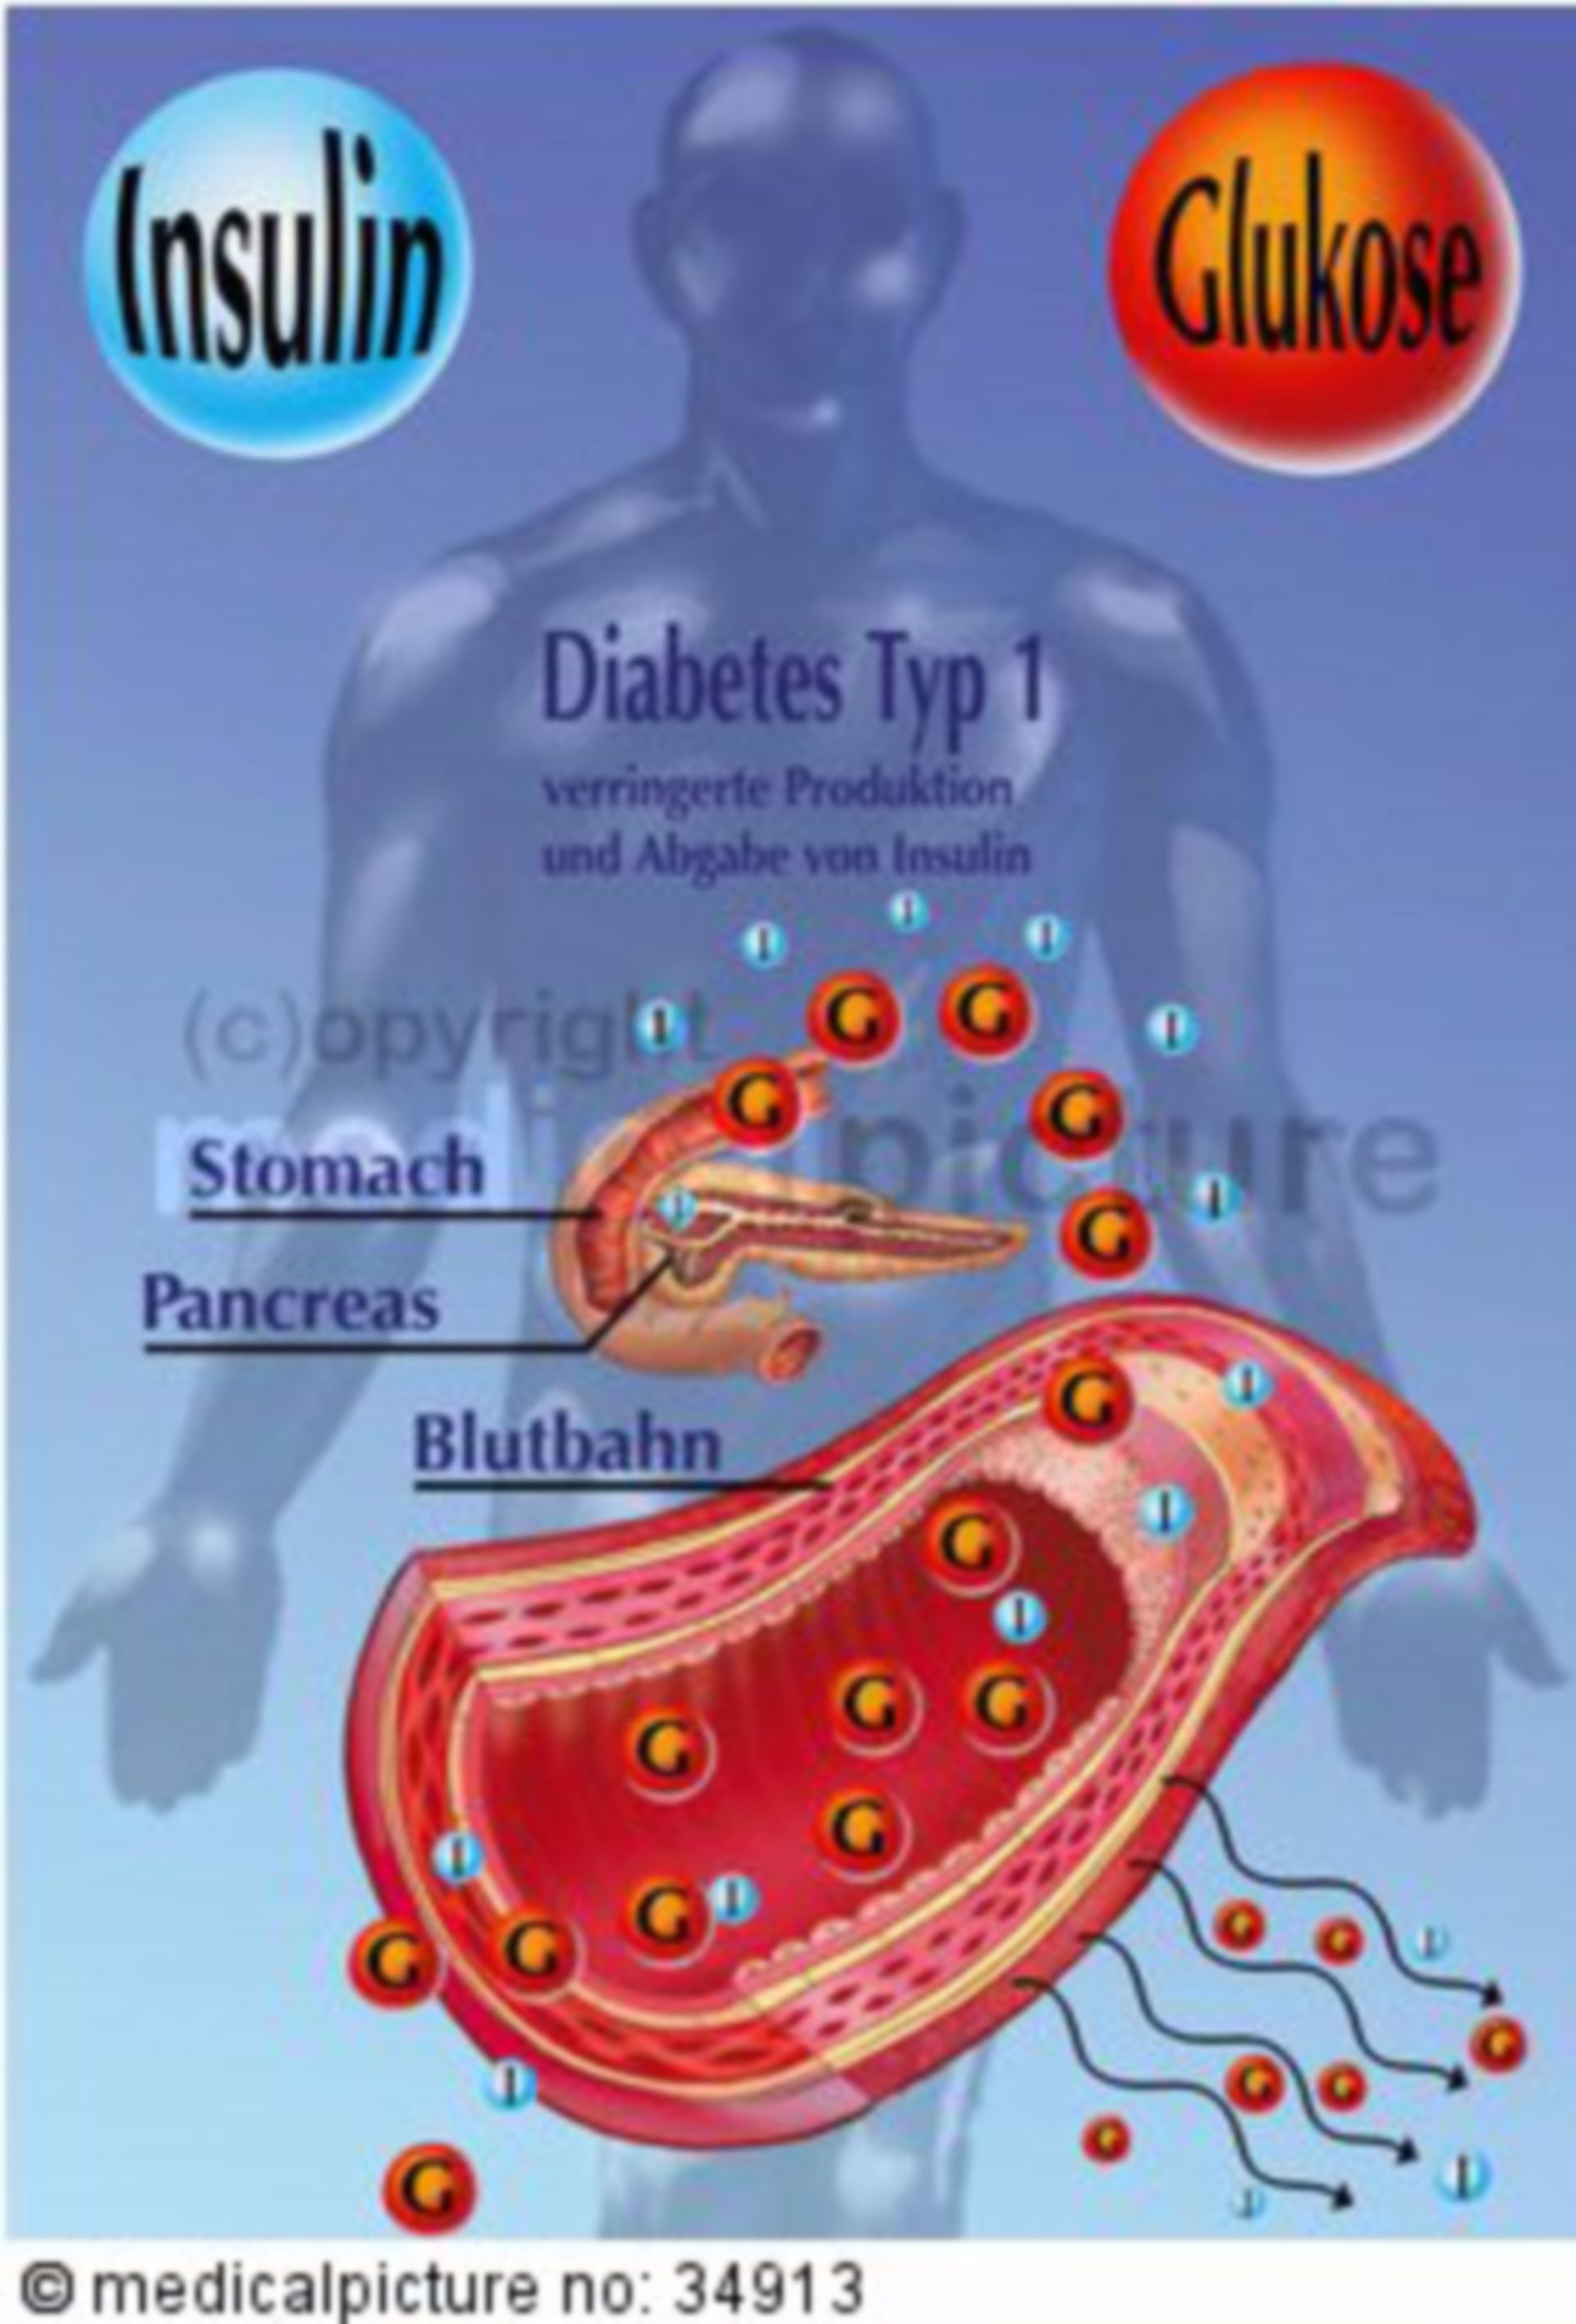  Insulinsekretion bei Menschen mit Typ-1-Diabetes 
